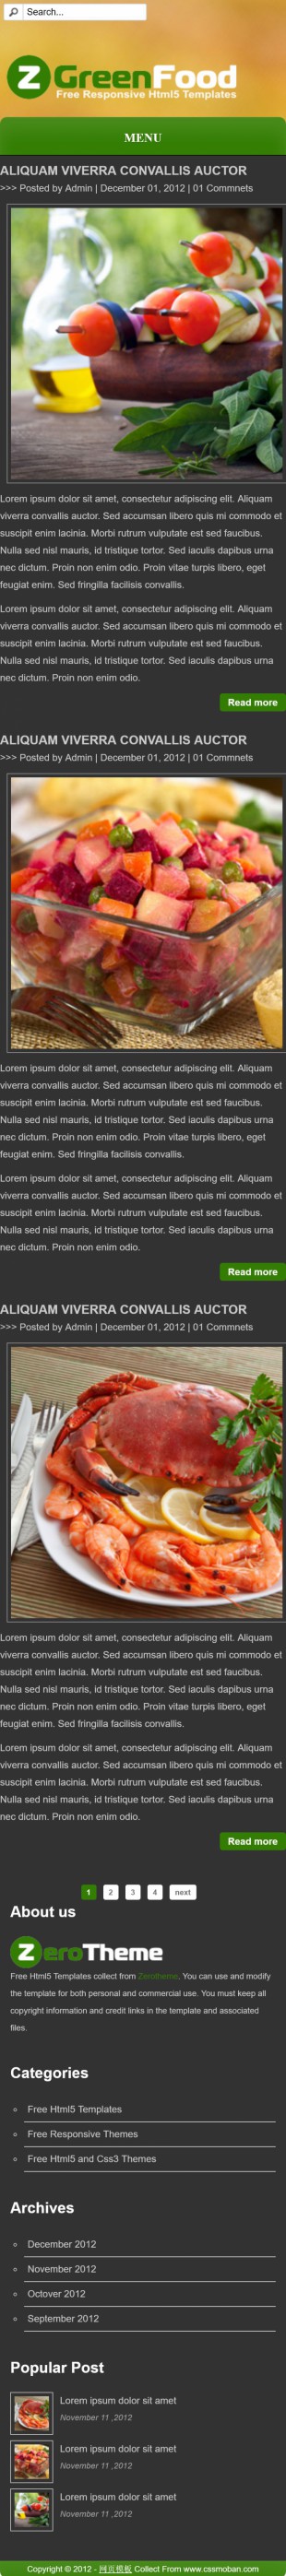 大图背景绿色食物HTML5英文网站模板手机图片